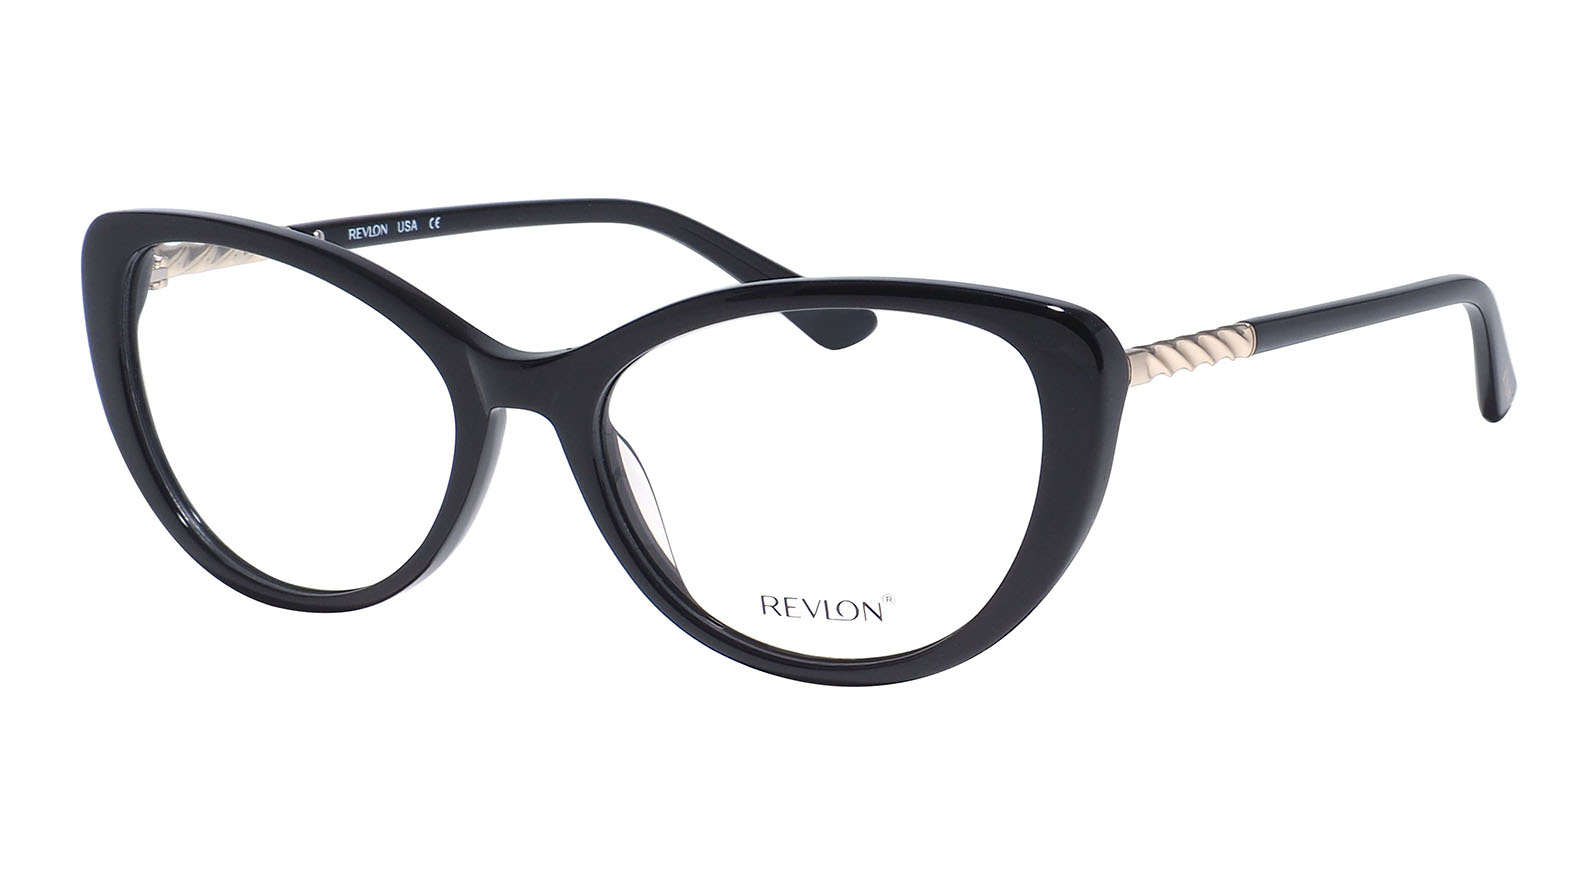 Revlon 1847 07 очки корригирующие 3гр линза фхс мужские